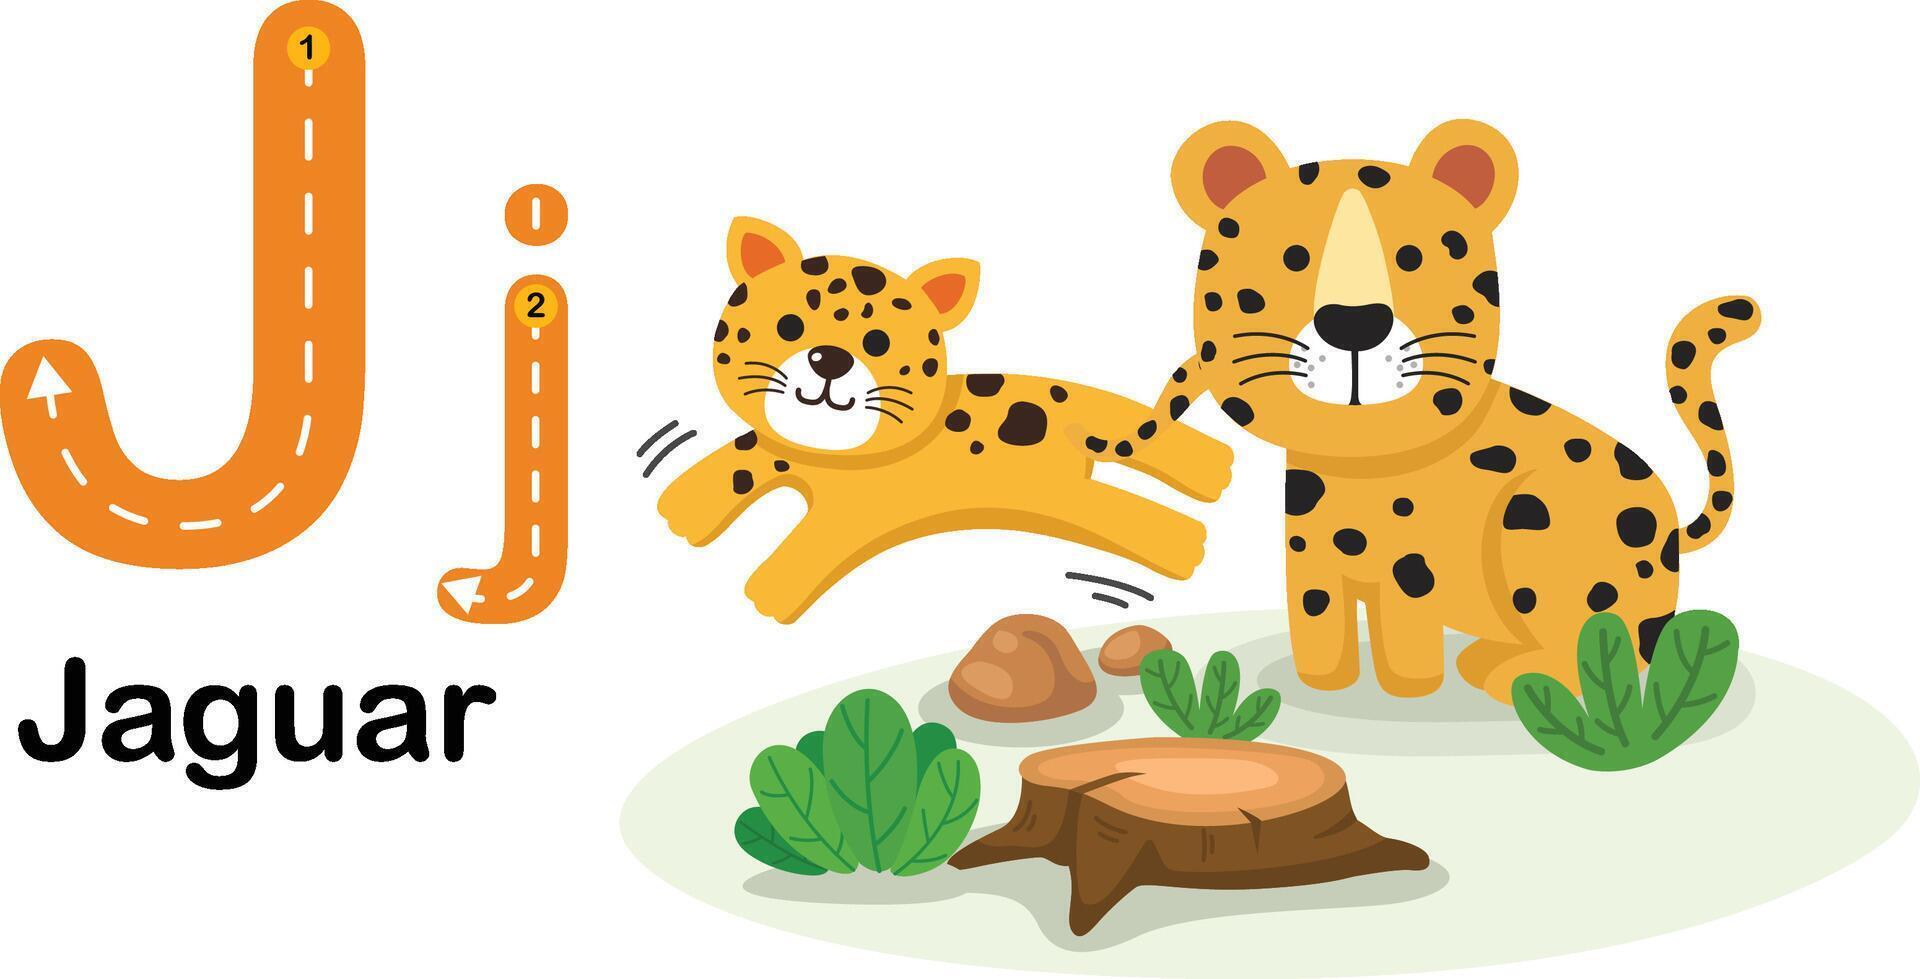 alfabeto letra j-jaguar con dibujos animados vocabulario ilustración, vector